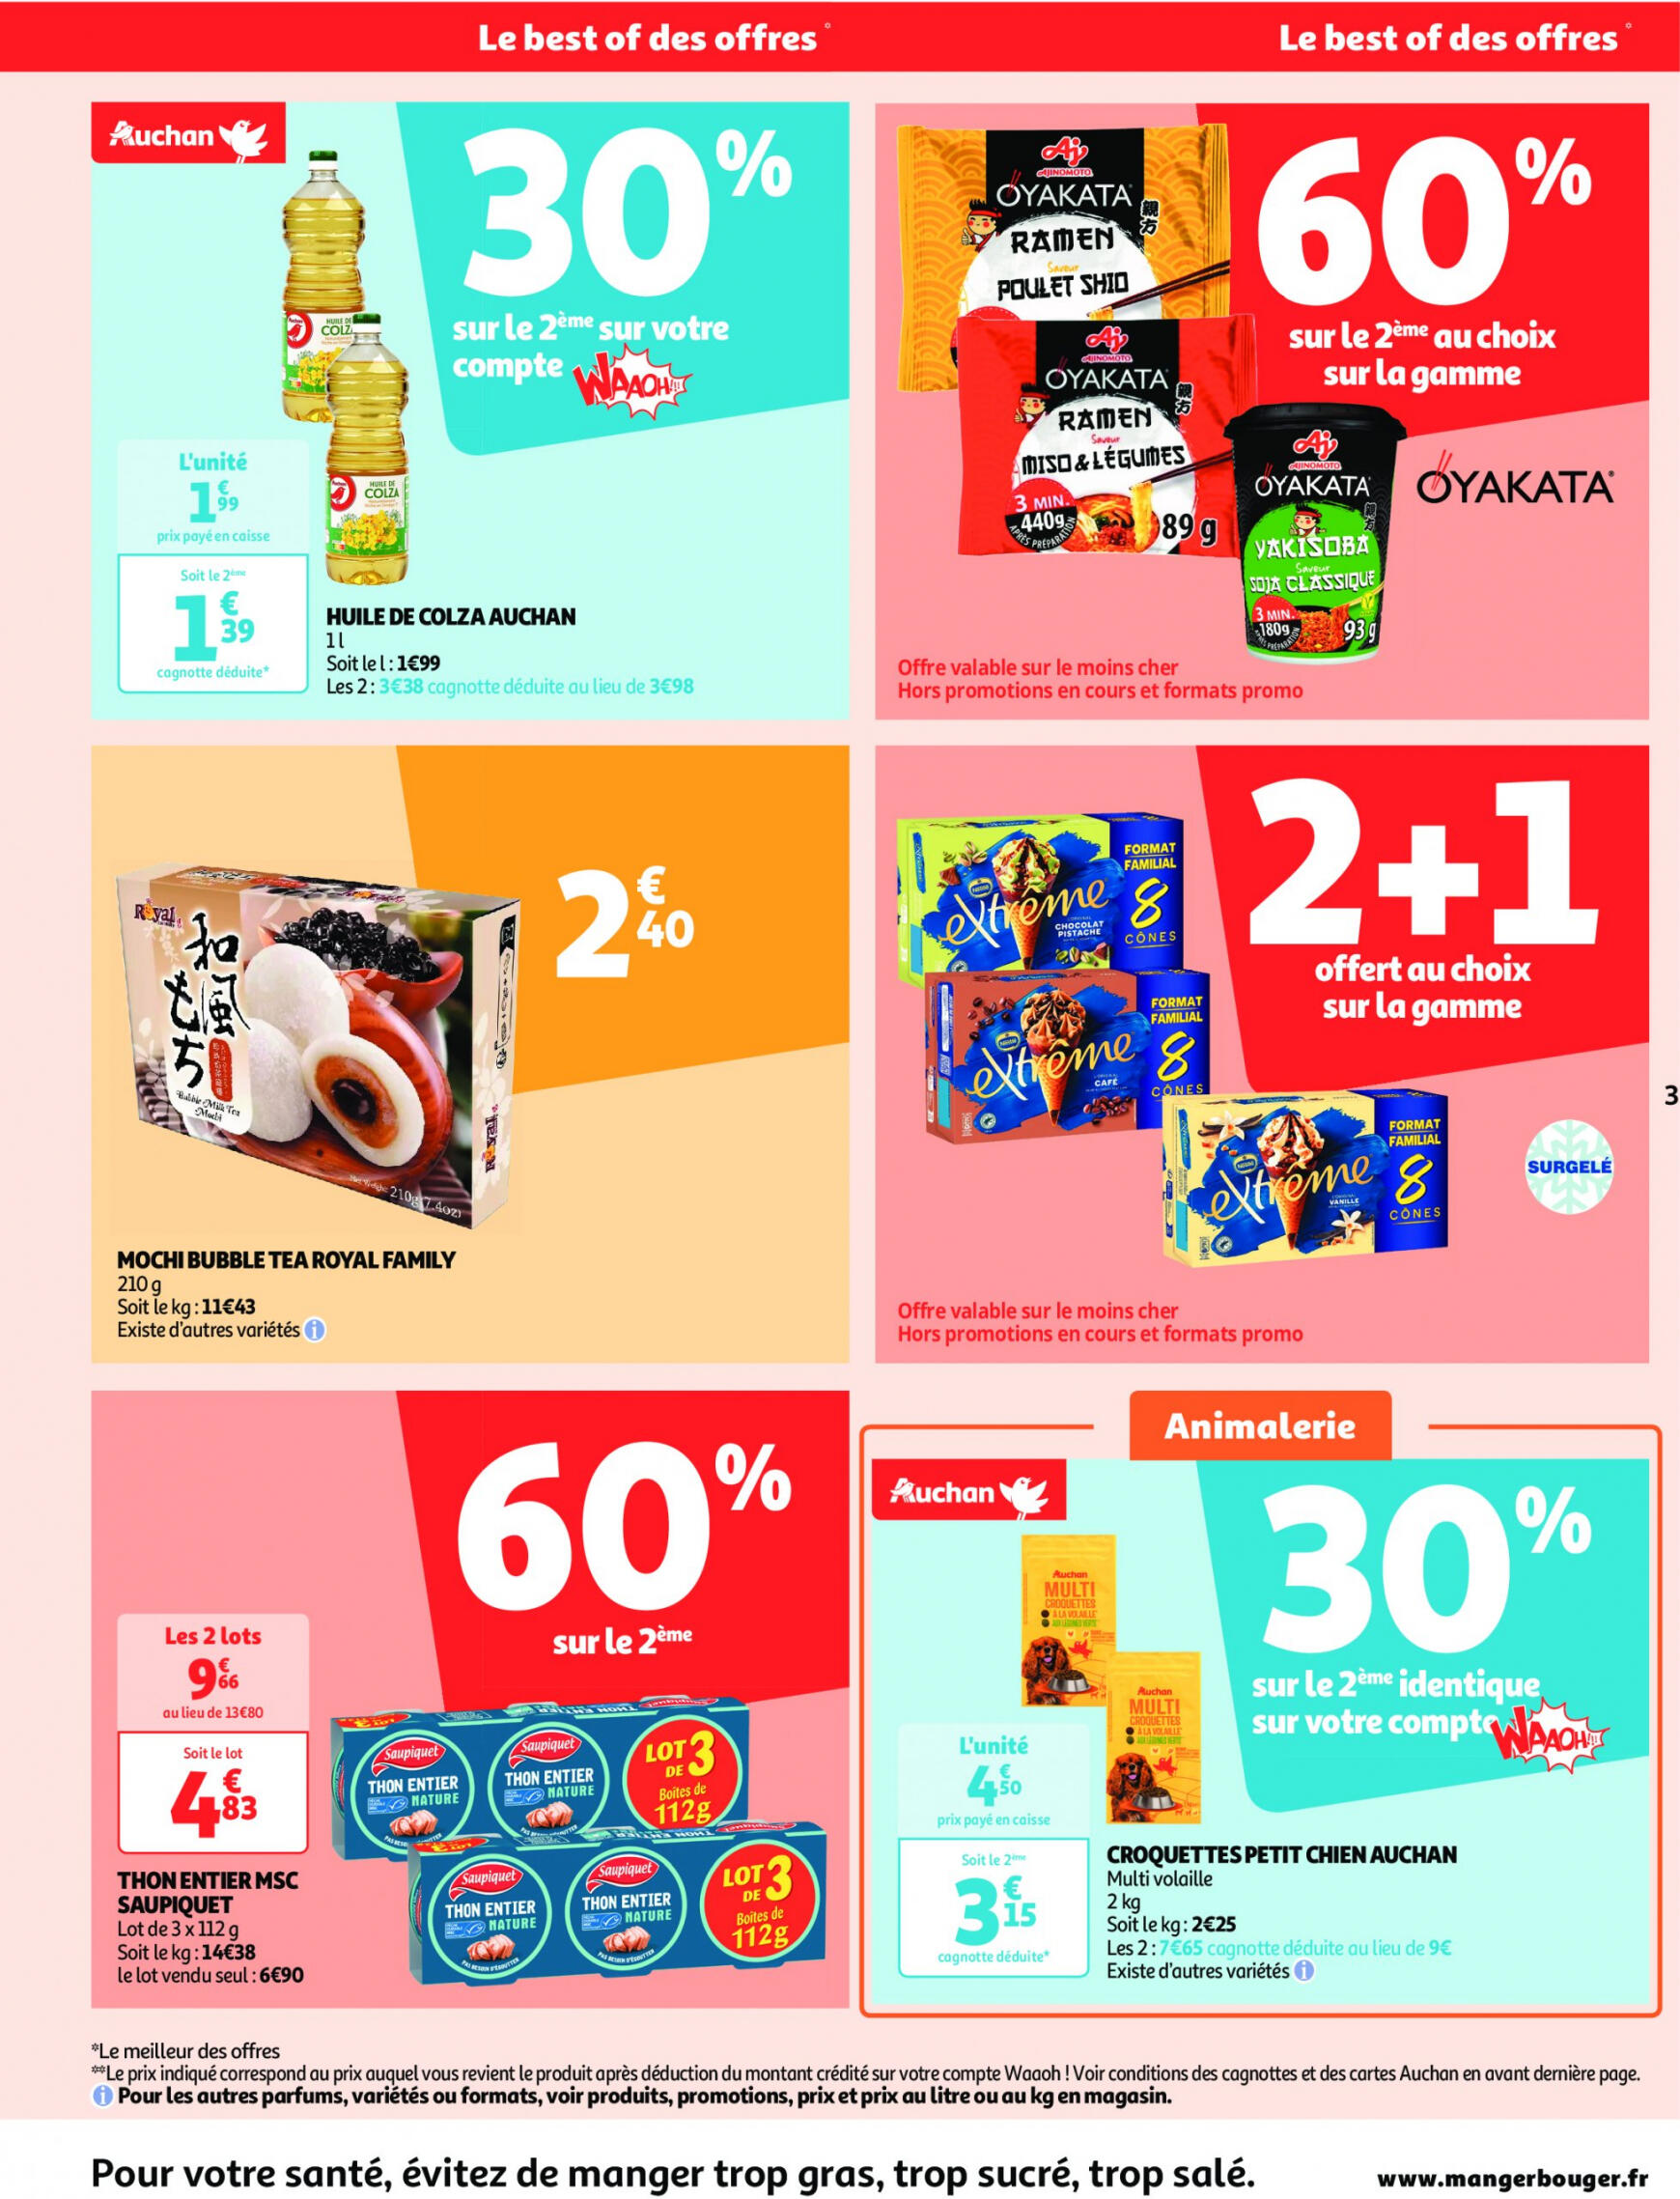 auchan - Auchan supermarché - Faites le plein de bonnes affaires folder huidig 22.05. - 26.05. - page: 3